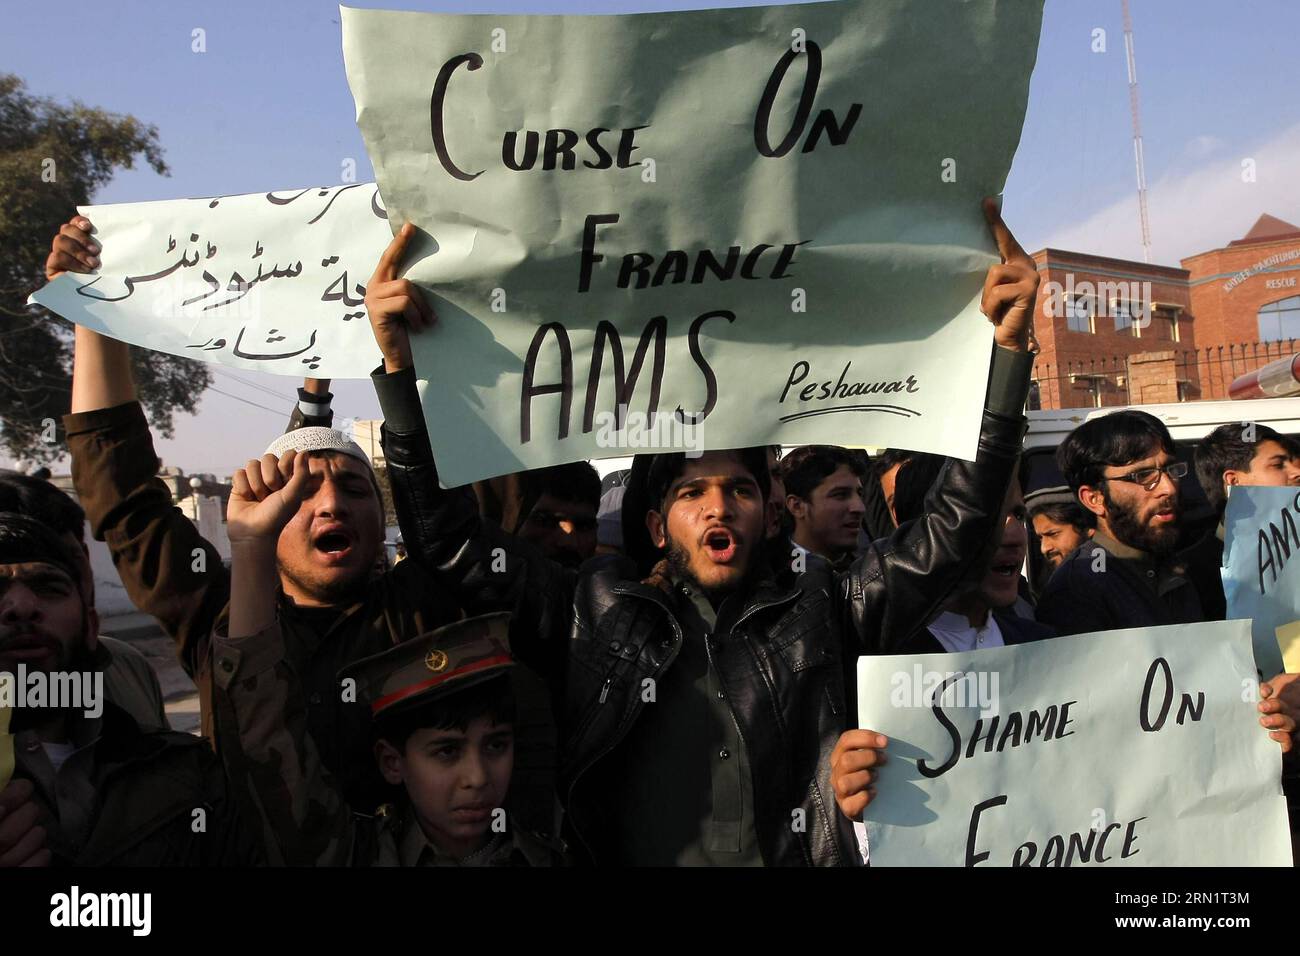 (150119) -- PESHAWAR, 19. Januar 2015 -- pakistanische Studenten schreien Parolen während eines Protestes gegen die Veröffentlichung von Karikaturen des Propheten Mohammed durch das französische Magazin Charlie Hebdo im nordwestlichen pakistanischen Peshawar am 19. Januar 2015. ) PAKISTAN-PESHAWAR-CHARLIE-HEBDO-DEMONSTRATION UmarxQayyum PUBLICATIONxNOTxINxCHN Peshawar 19. Januar 2015 pakistanische Studenten schreien Parolen während eines Protestes gegen die VERÖFFENTLICHUNG von Karikaturen des Propheten Mohammed durch das französische Magazin Charlie Hebdo im Nordwesten Pakistans S Peshawar AM 19. Januar 2015 Pakistan Peshawar Charlie Hebdo Demonstration PNOBLATxNNNNN Stockfoto